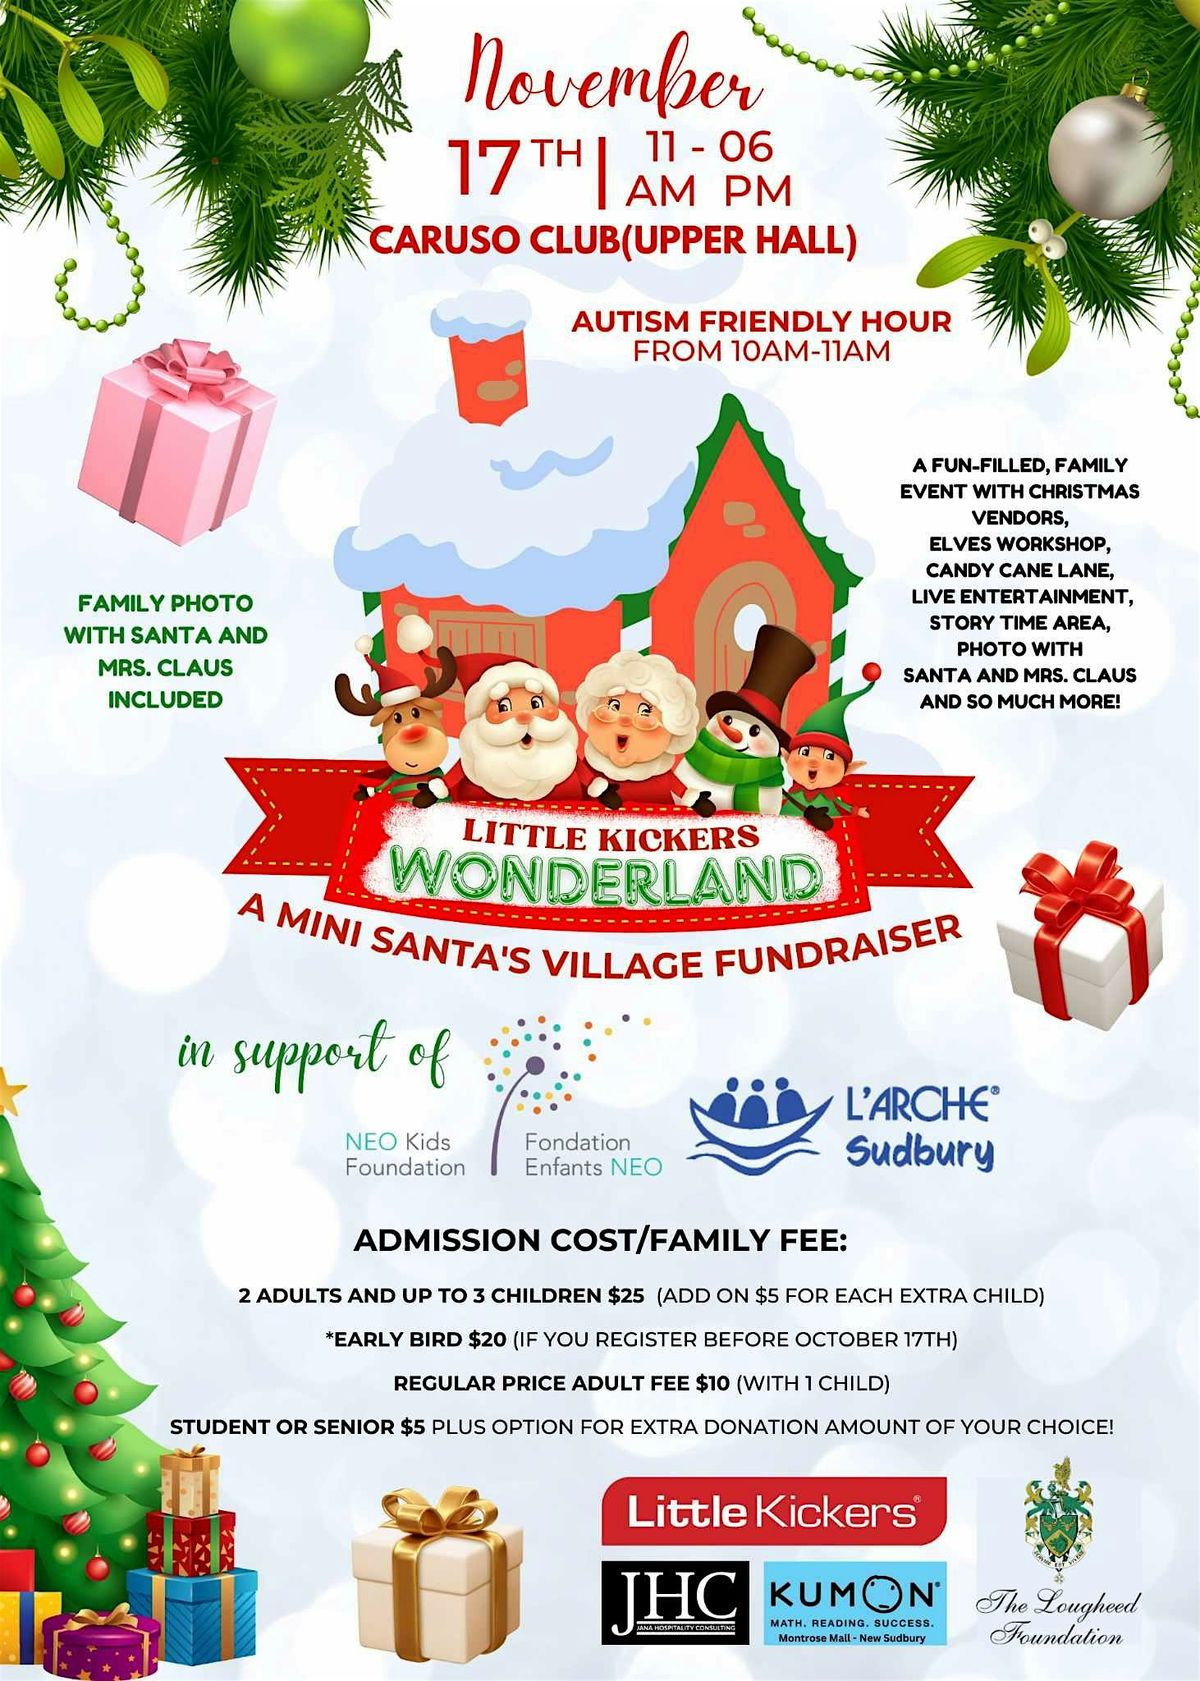 Little Kickers Wonderland (mini Santa's Village fundraiser)